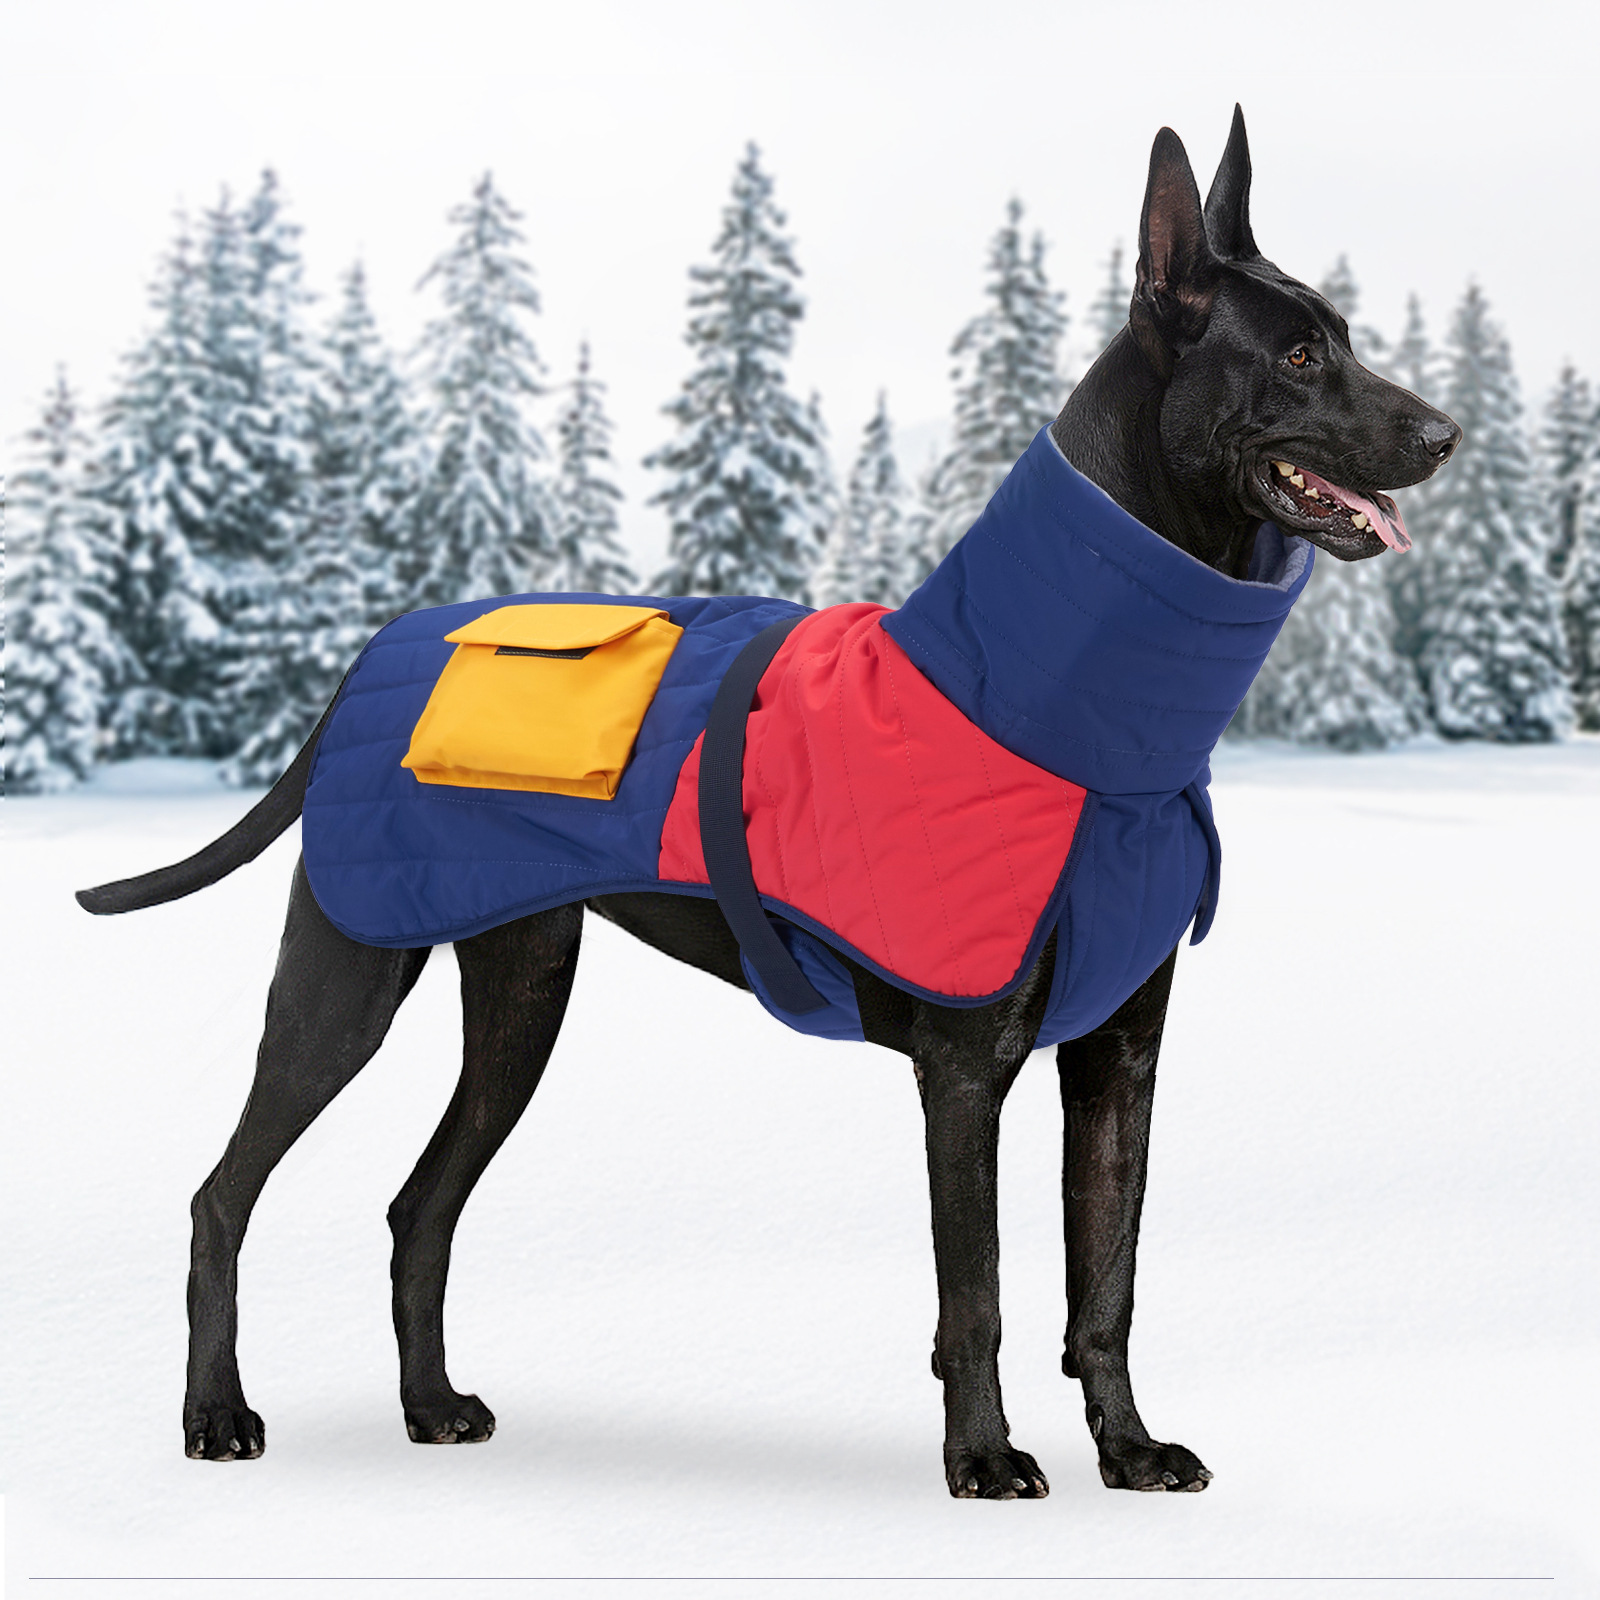 宠物狗狗衣服冬装加厚保暖威玛杜宾德牧中型大型犬狗棉衣冬款冬季